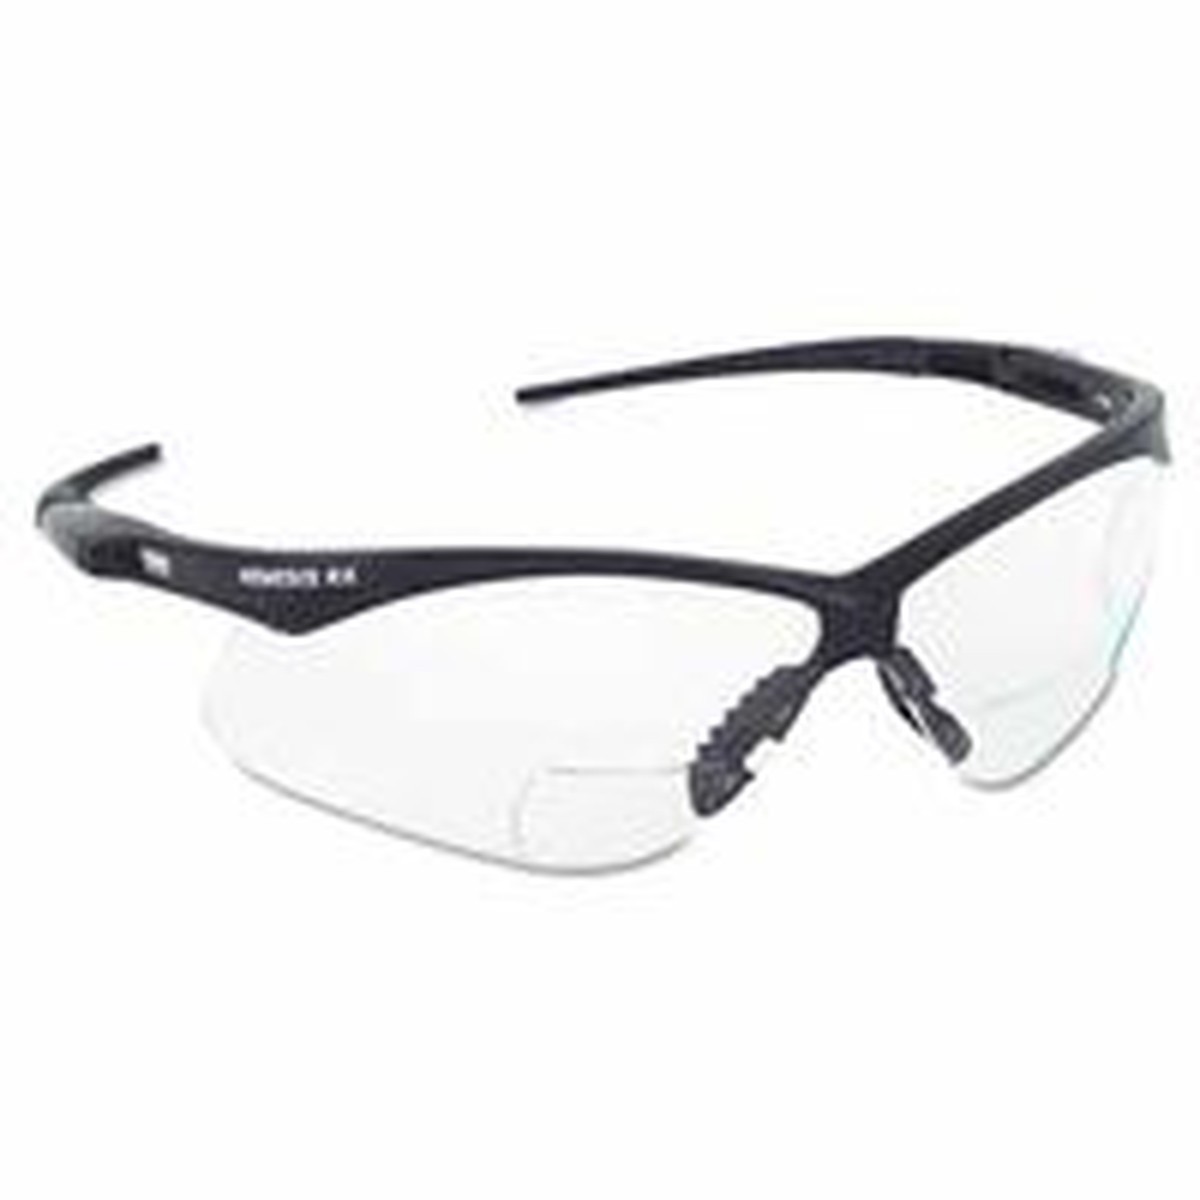 V60 Nemesis Rx Reader Safety Glasses, Black Frame, Smoke Lens, +2.0 Diopter Strength